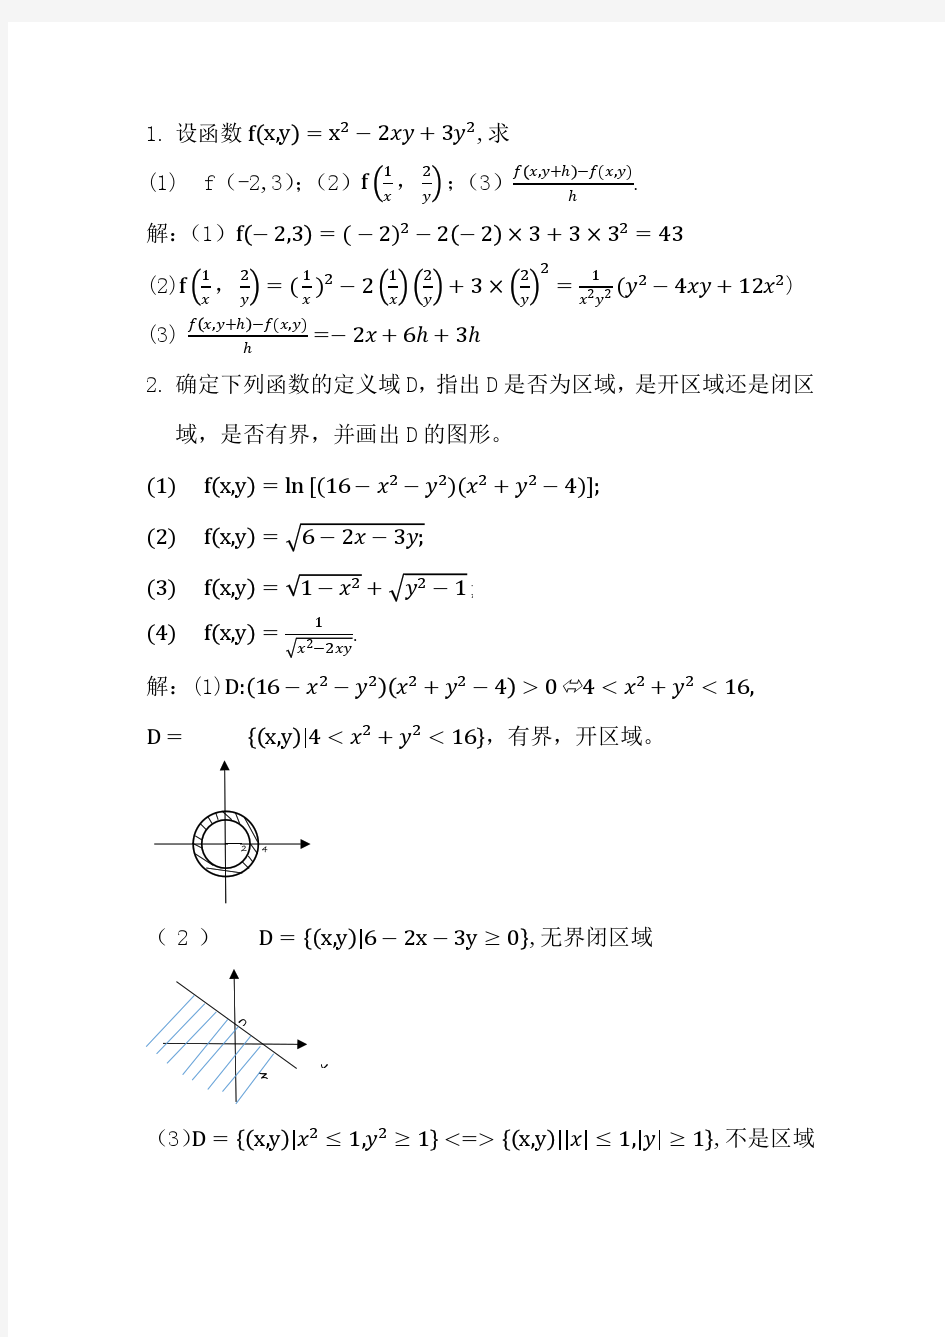 大学数学微积分(下) 第三版 李辉来 习题详解